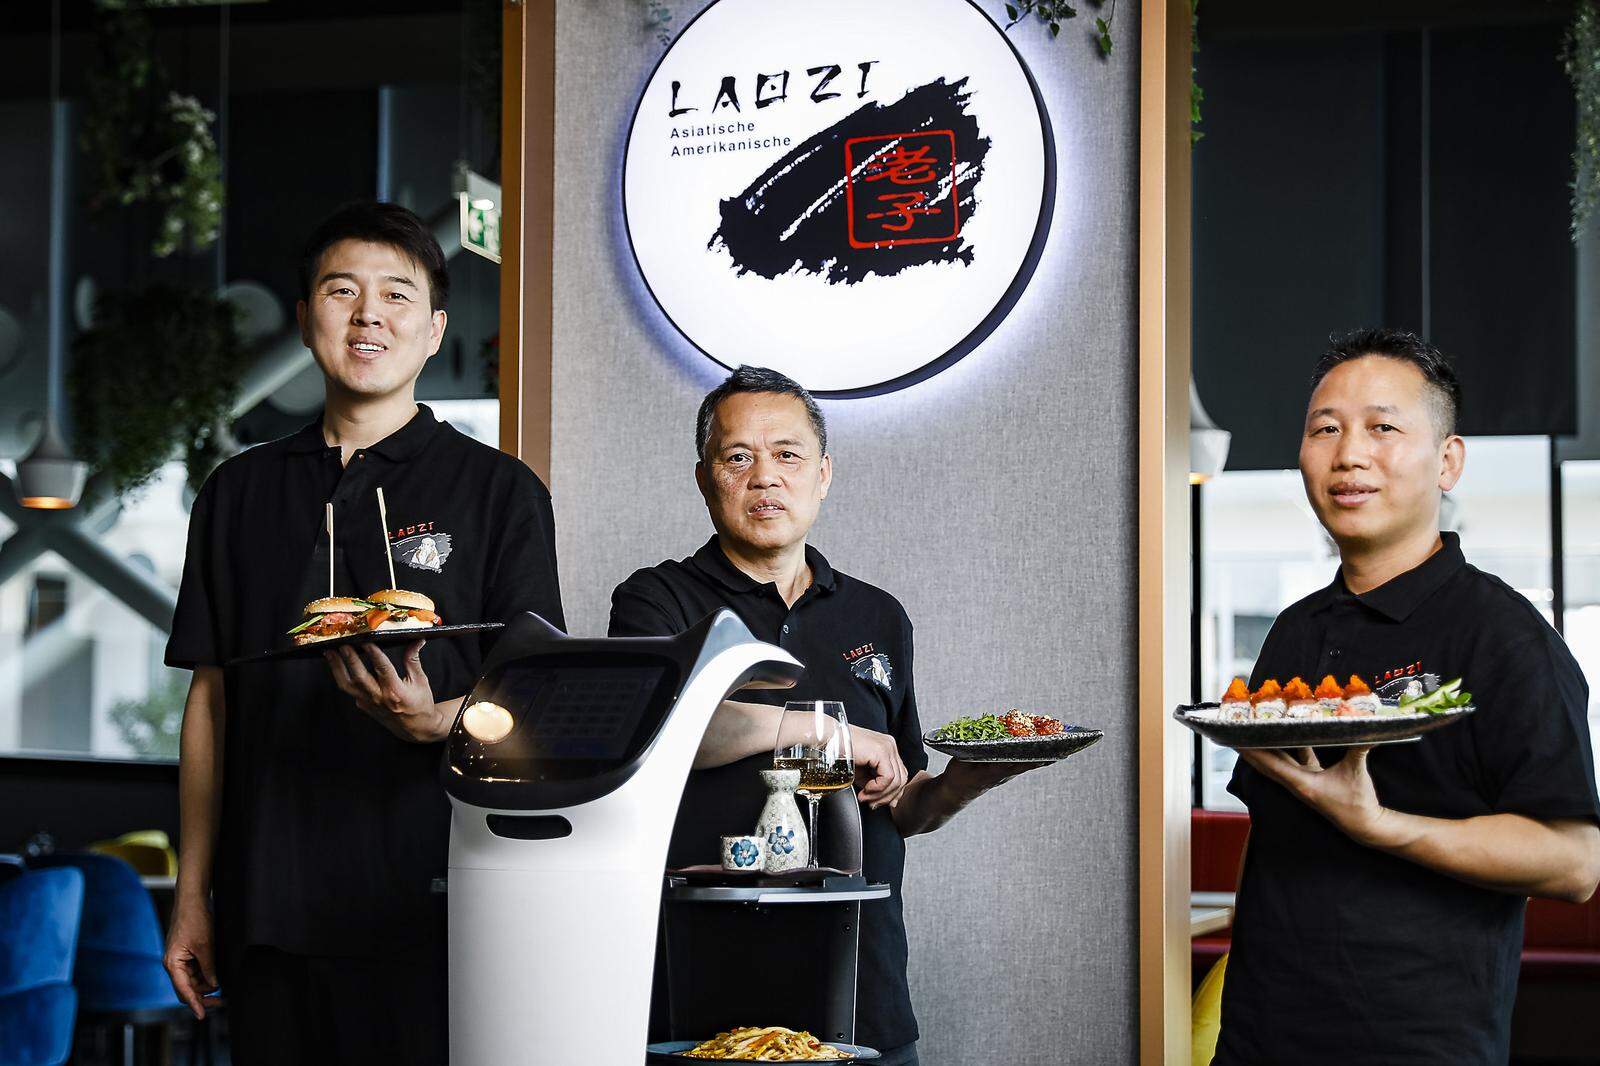 Restaurant Laozi in Graz